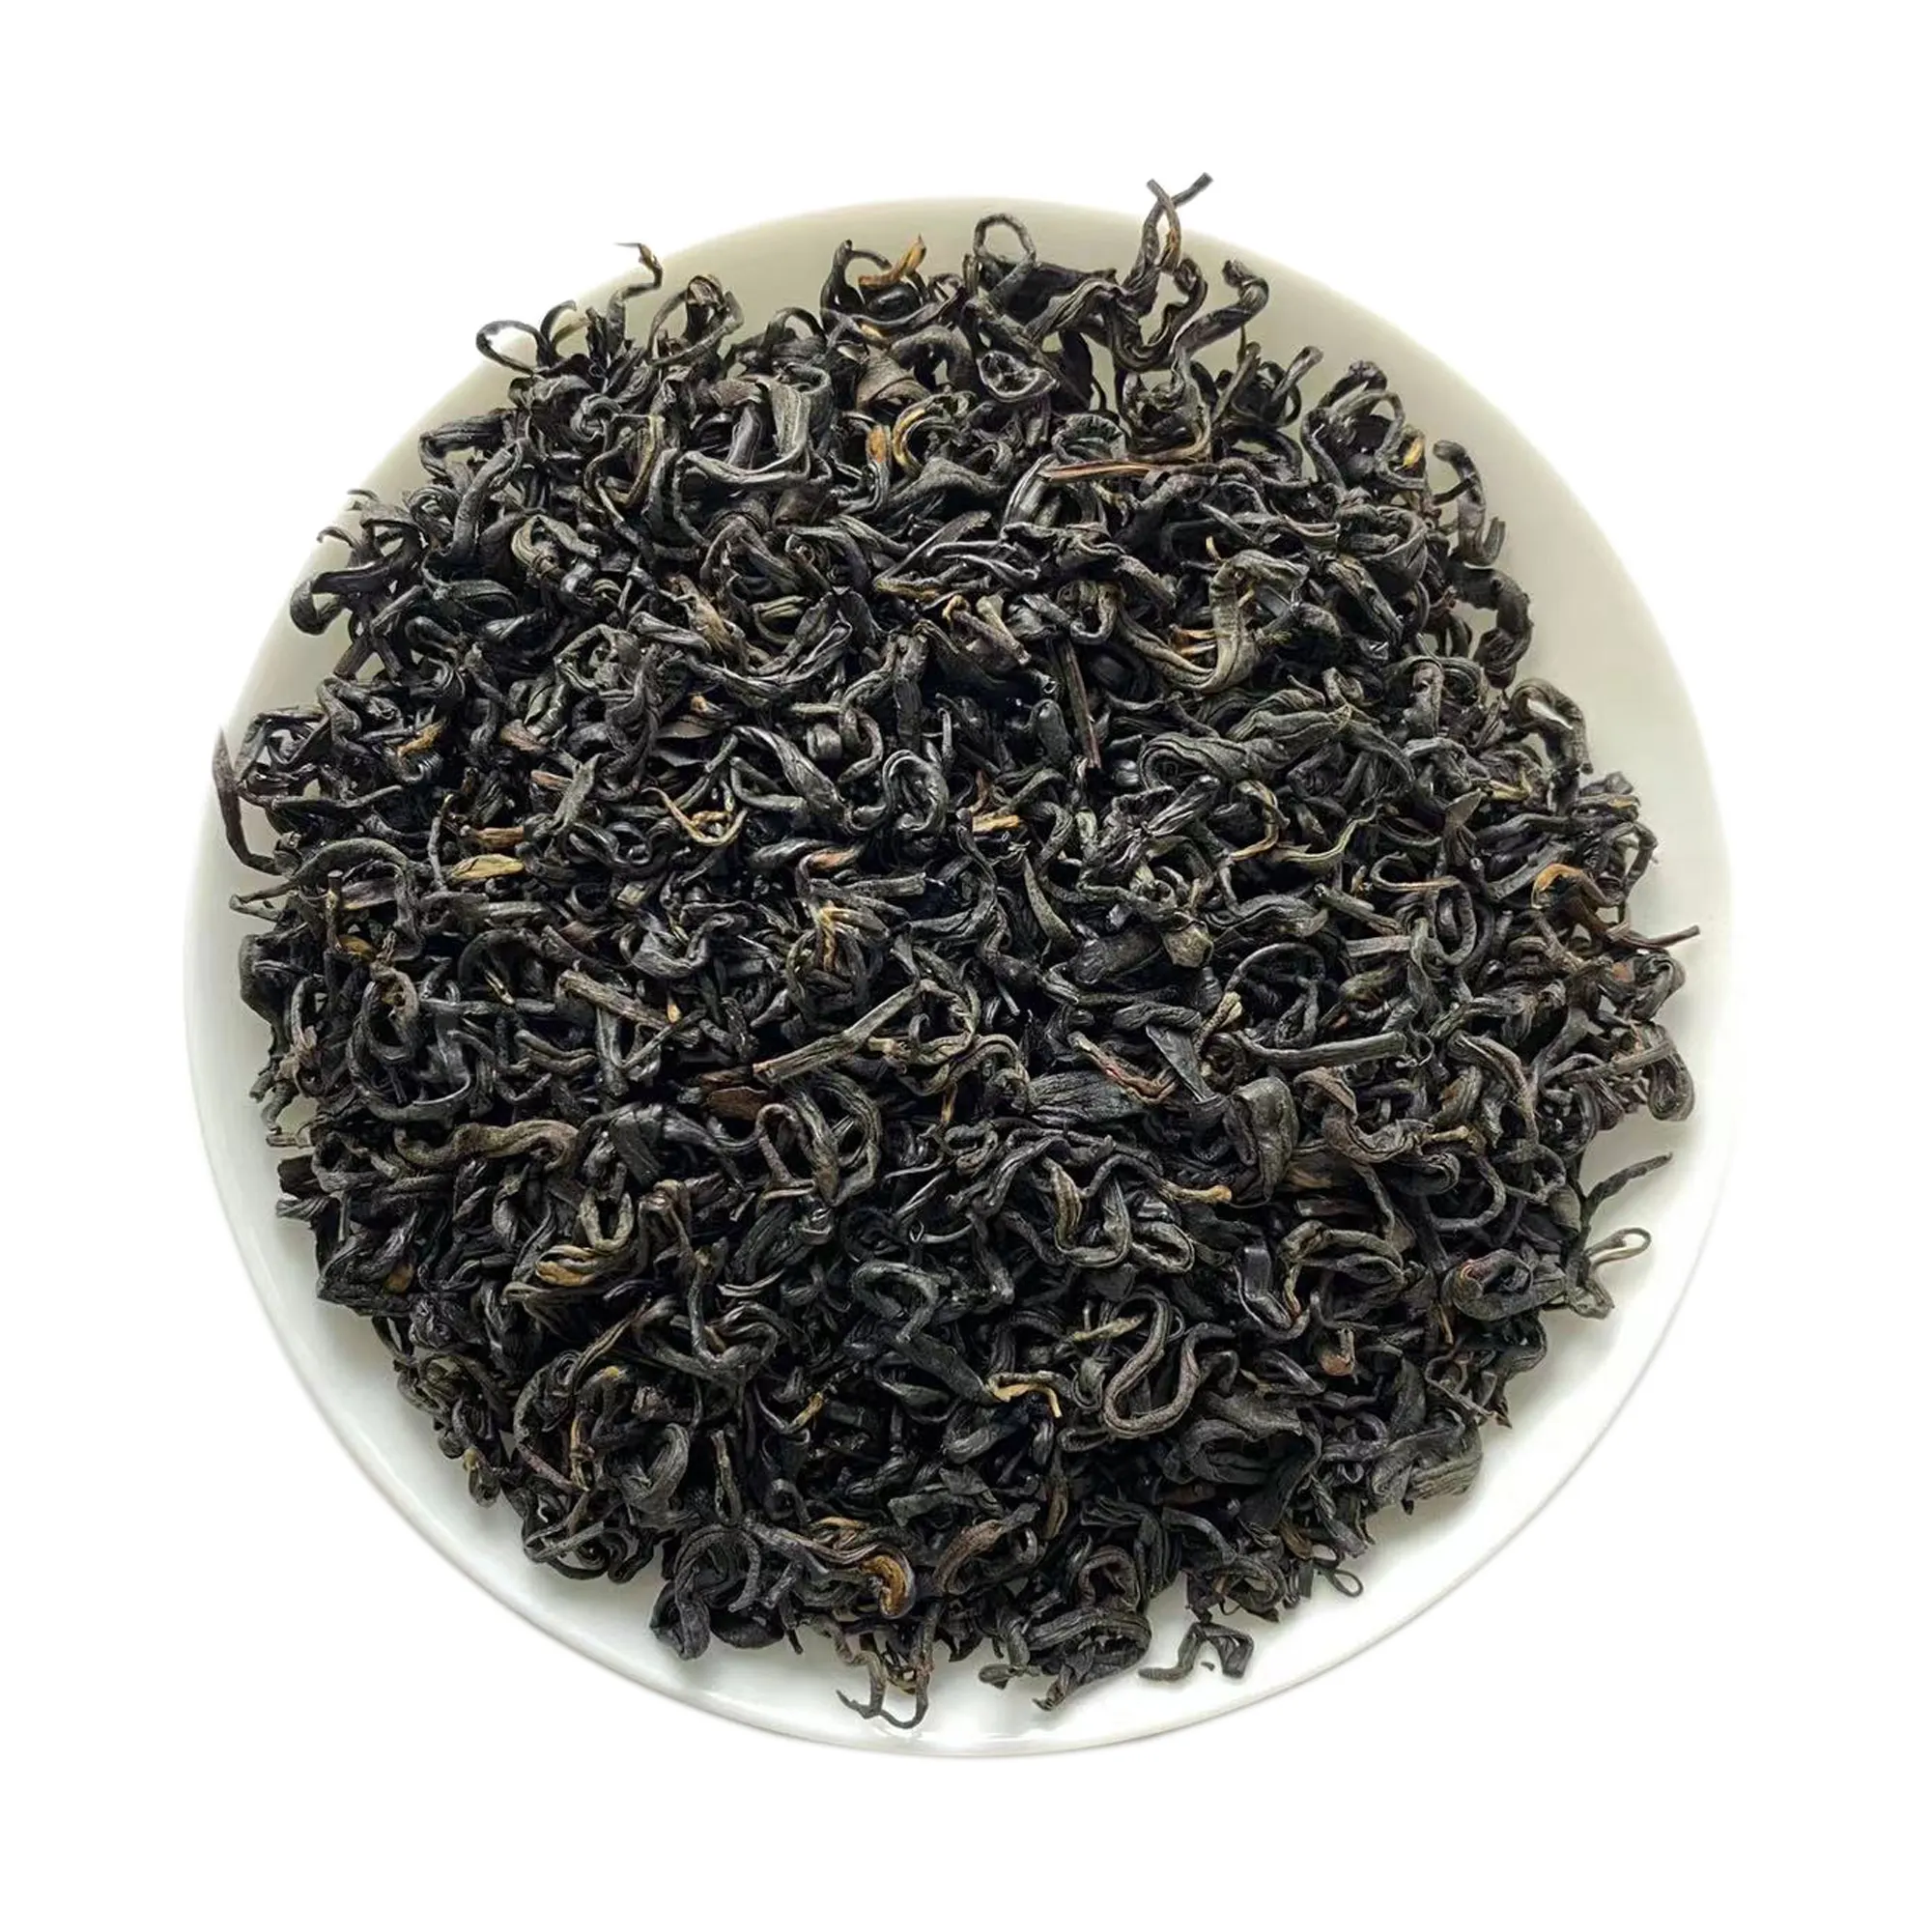 أفضل عشرة شاي شهير أنهوي كيمن الشاي الأسود كيمن شيمين شيانغ لوه الأكثر مبيعًا كيمون حلزوني هونج تشا